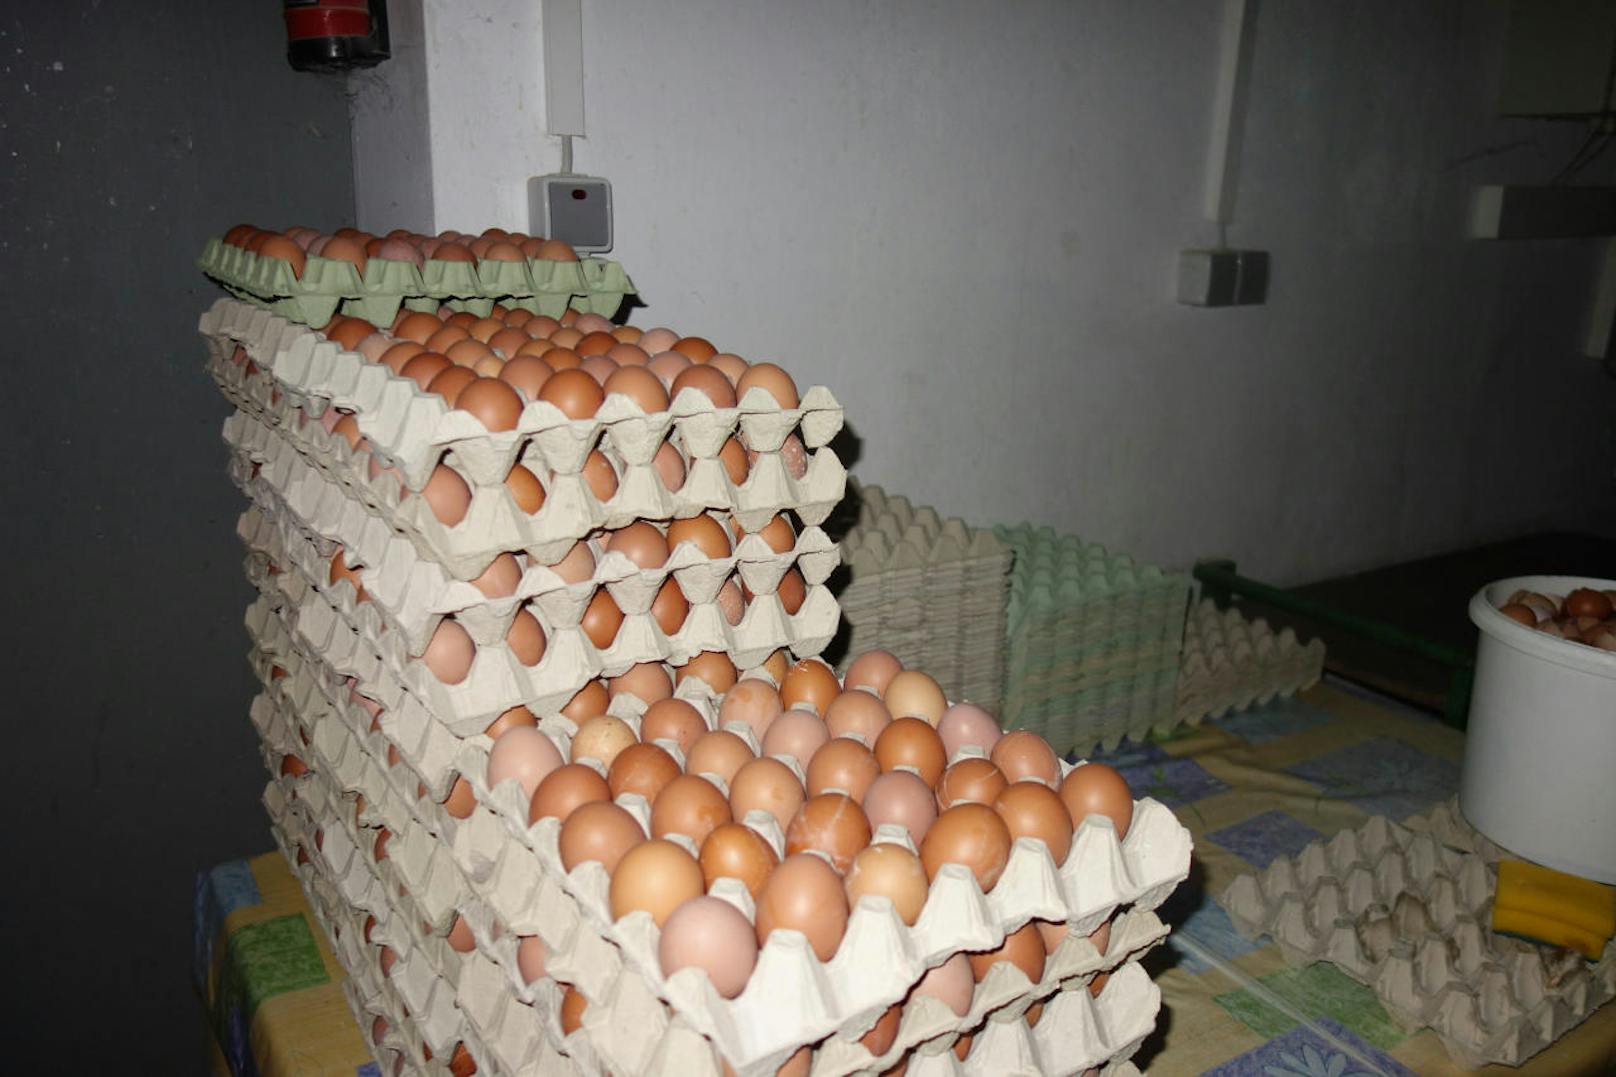 Der Bauer aus Niederösterreich verkauft die Eier der Hennen als "Bodenhaltung" (Nummer "2").